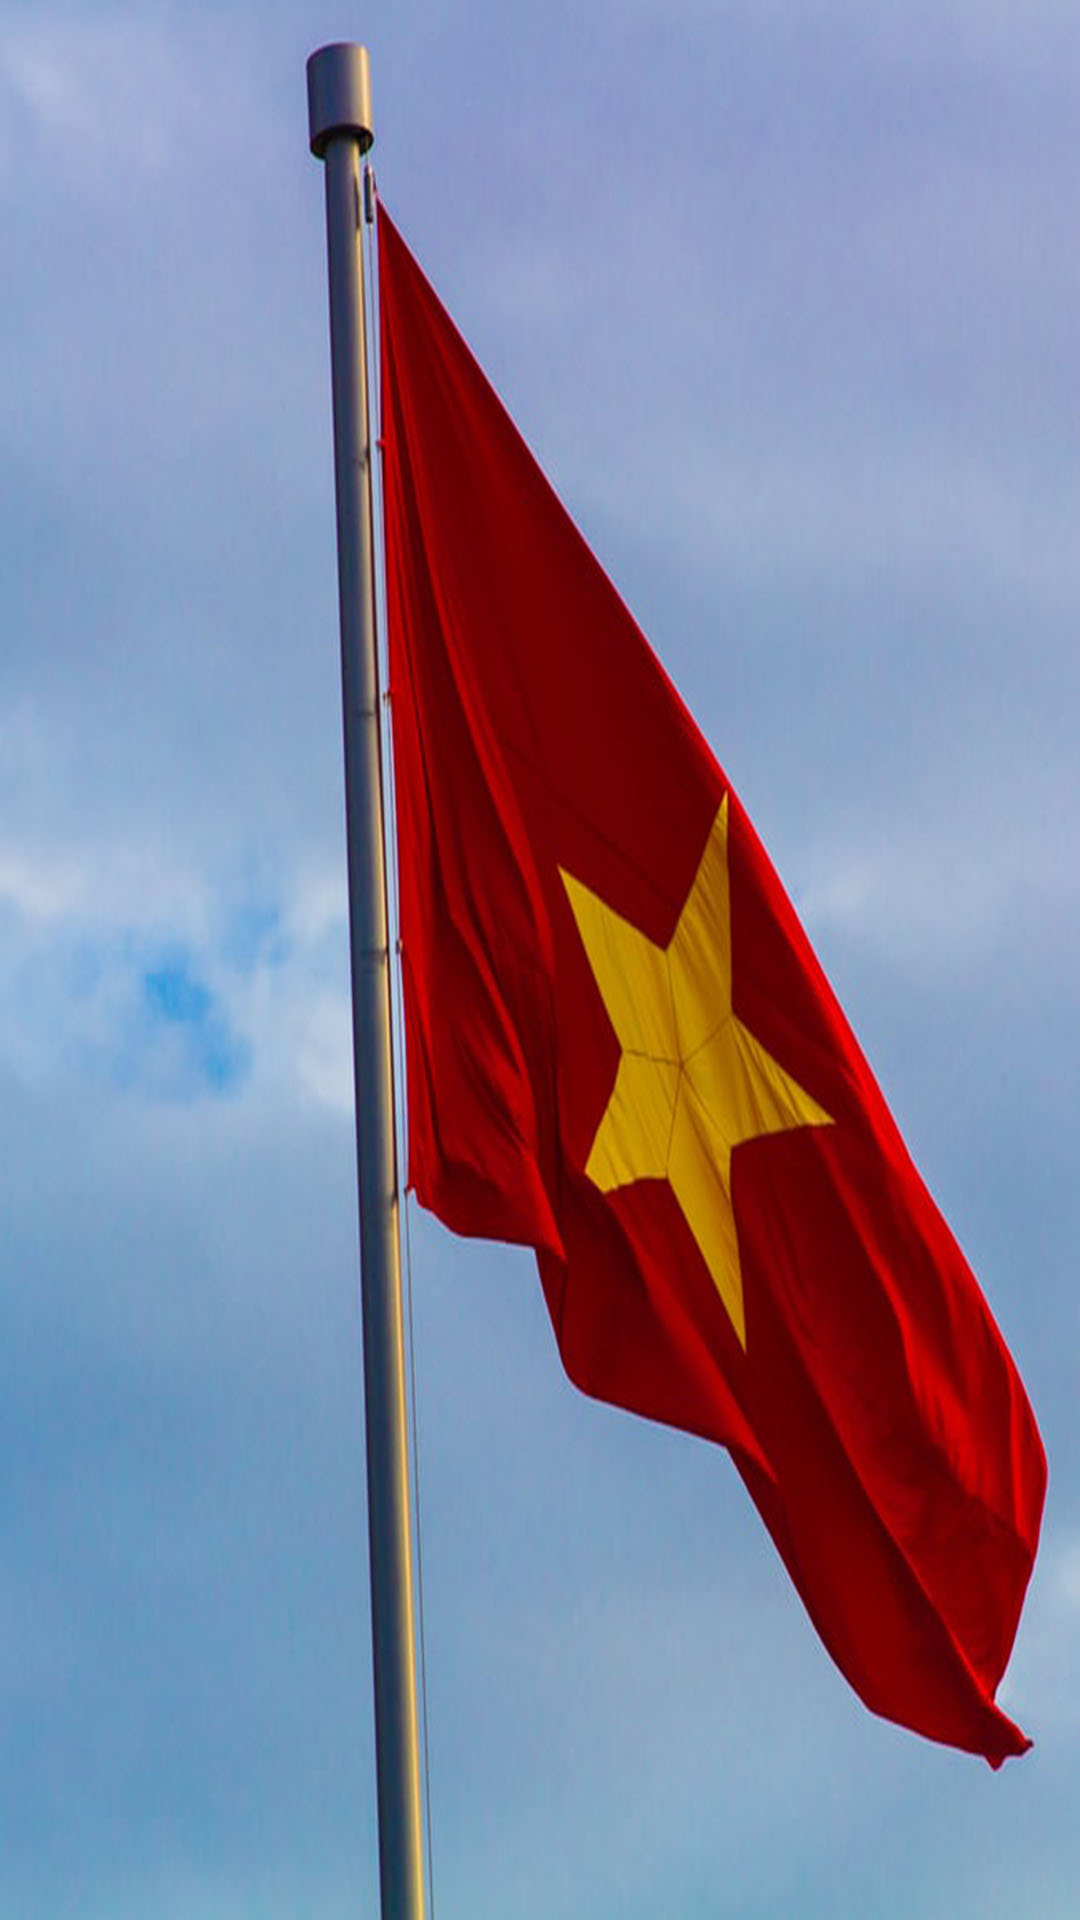 Hình nền cờ Việt Nam: Hãy trang trí cho điện thoại của bạn với hình nền cờ Việt Nam đầy tự hào và ý nghĩa. Là biểu tượng của sự đoàn kết, sức mạnh, trí tuệ và lòng yêu nước của người Việt, cờ quốc kỳ Việt Nam là một trong những hình ảnh đẹp mà bạn không thể bỏ qua. Cho dù bạn đang ở bất kỳ đâu, luôn mang theo tinh thần yêu nước và tự hào truyền thống văn hóa của mình.